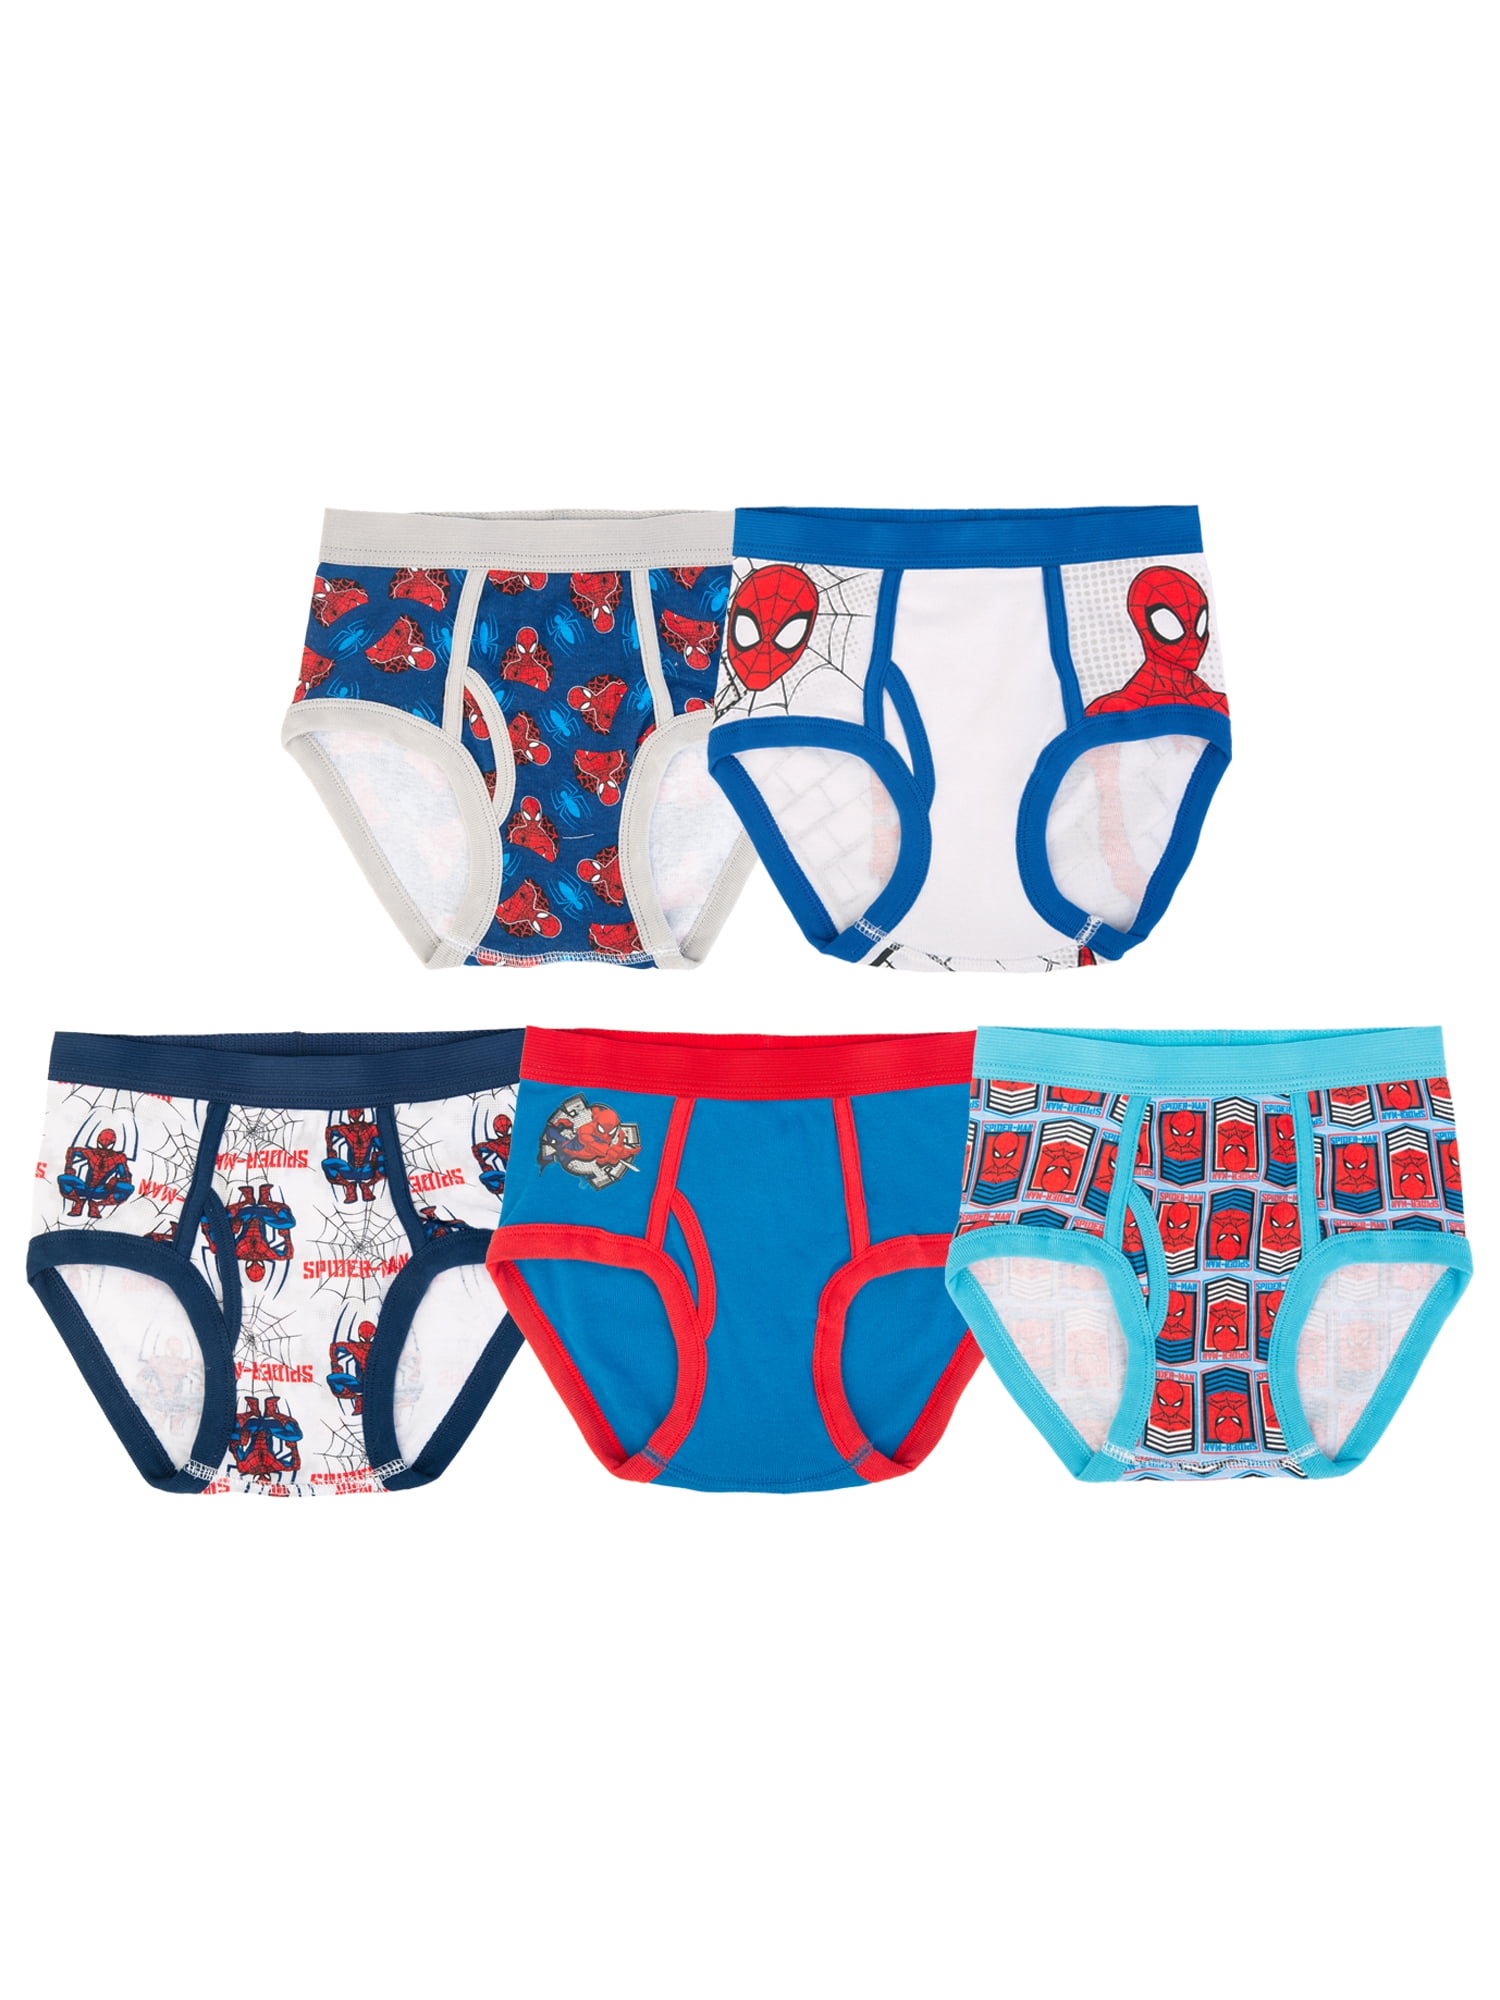 Spiderman - Underwear